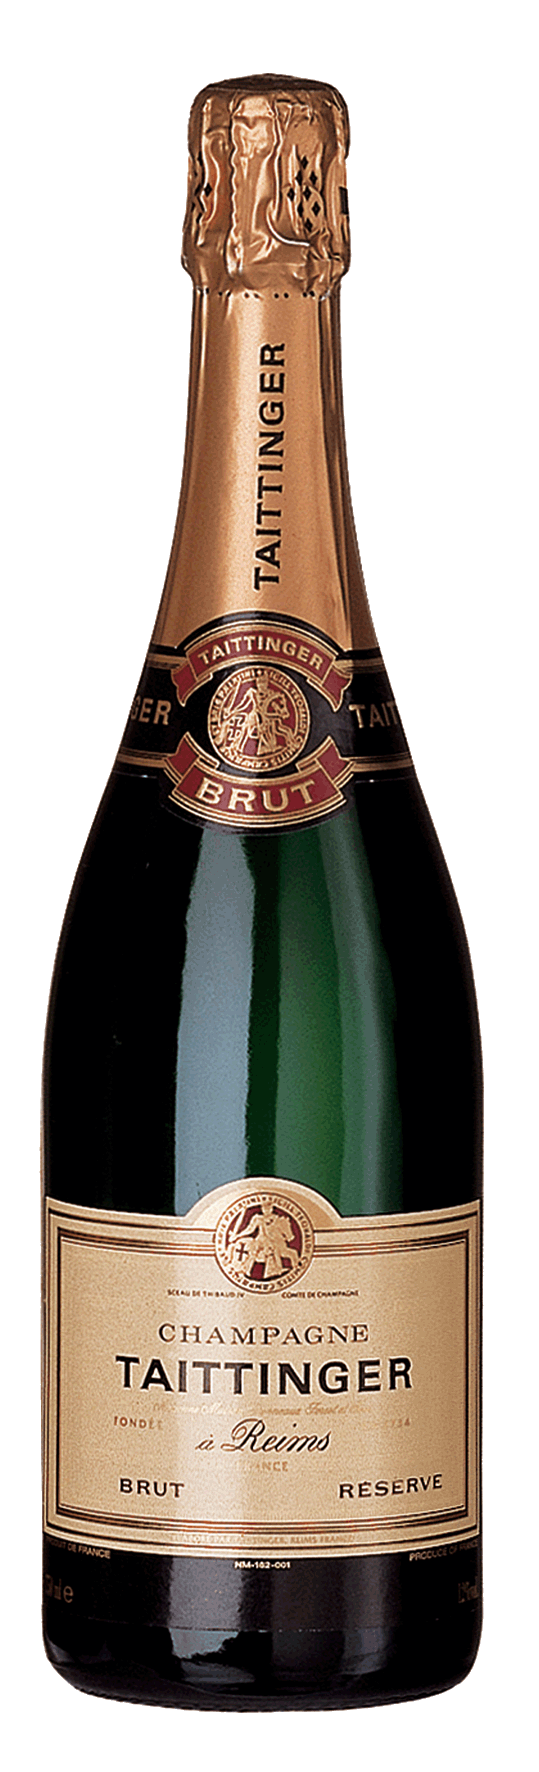 Champagner Taittinger brut Reserve 375ml